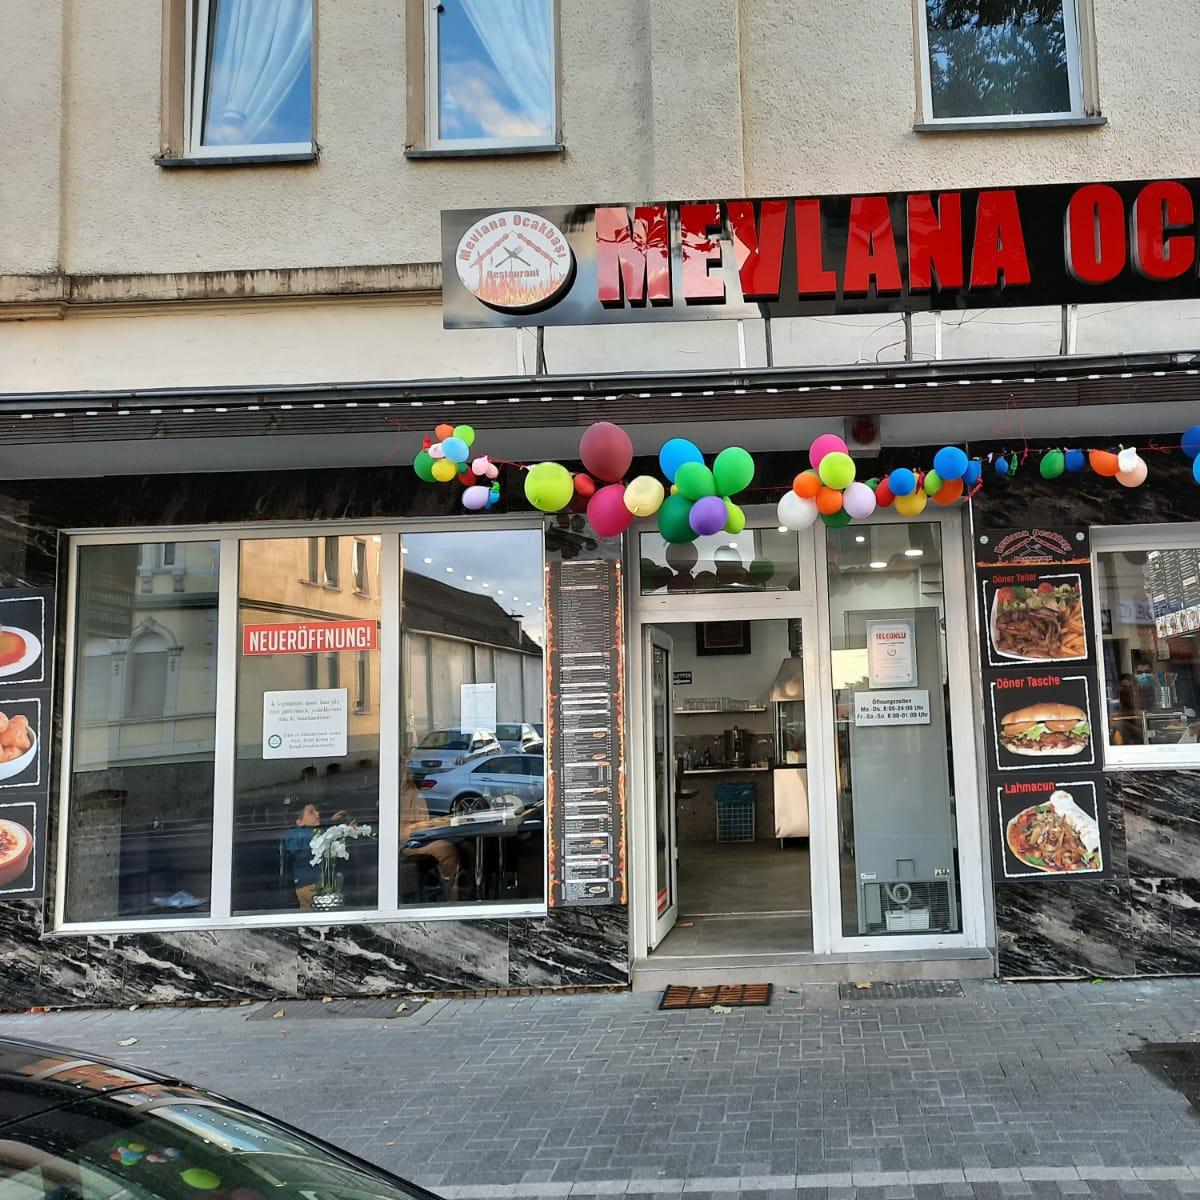 Restaurant "Mevlana Ocakbasi" in Recklinghausen